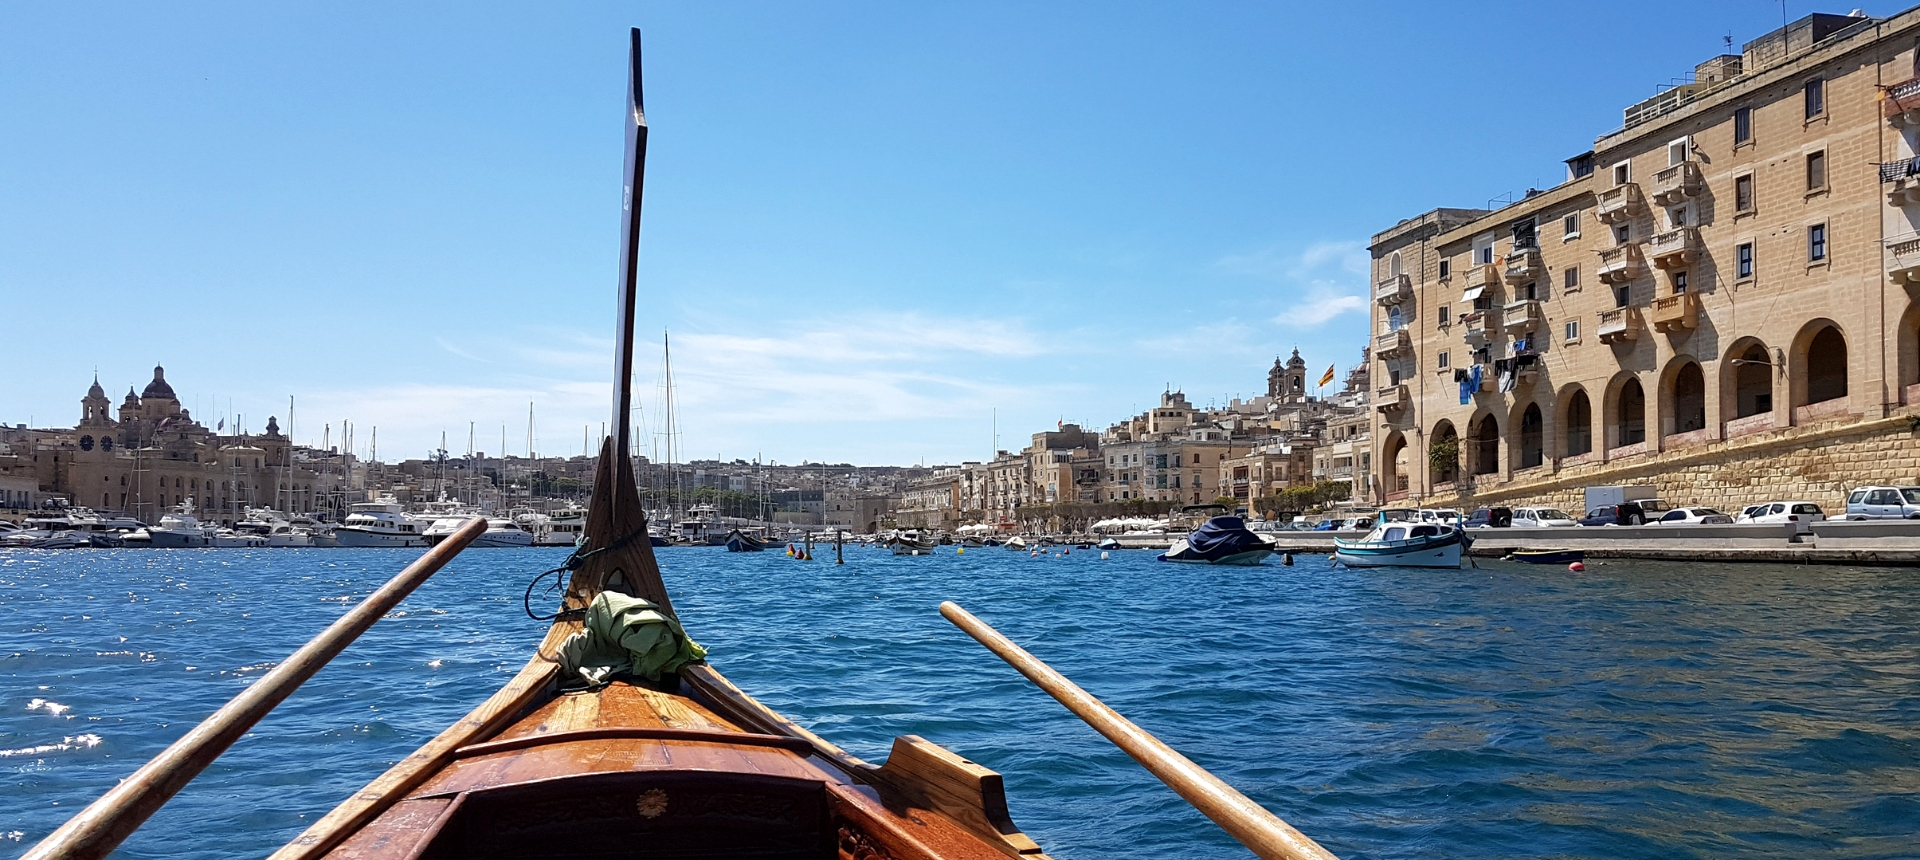 De 11 mooiste plekken van Malta, Gozo en Comino